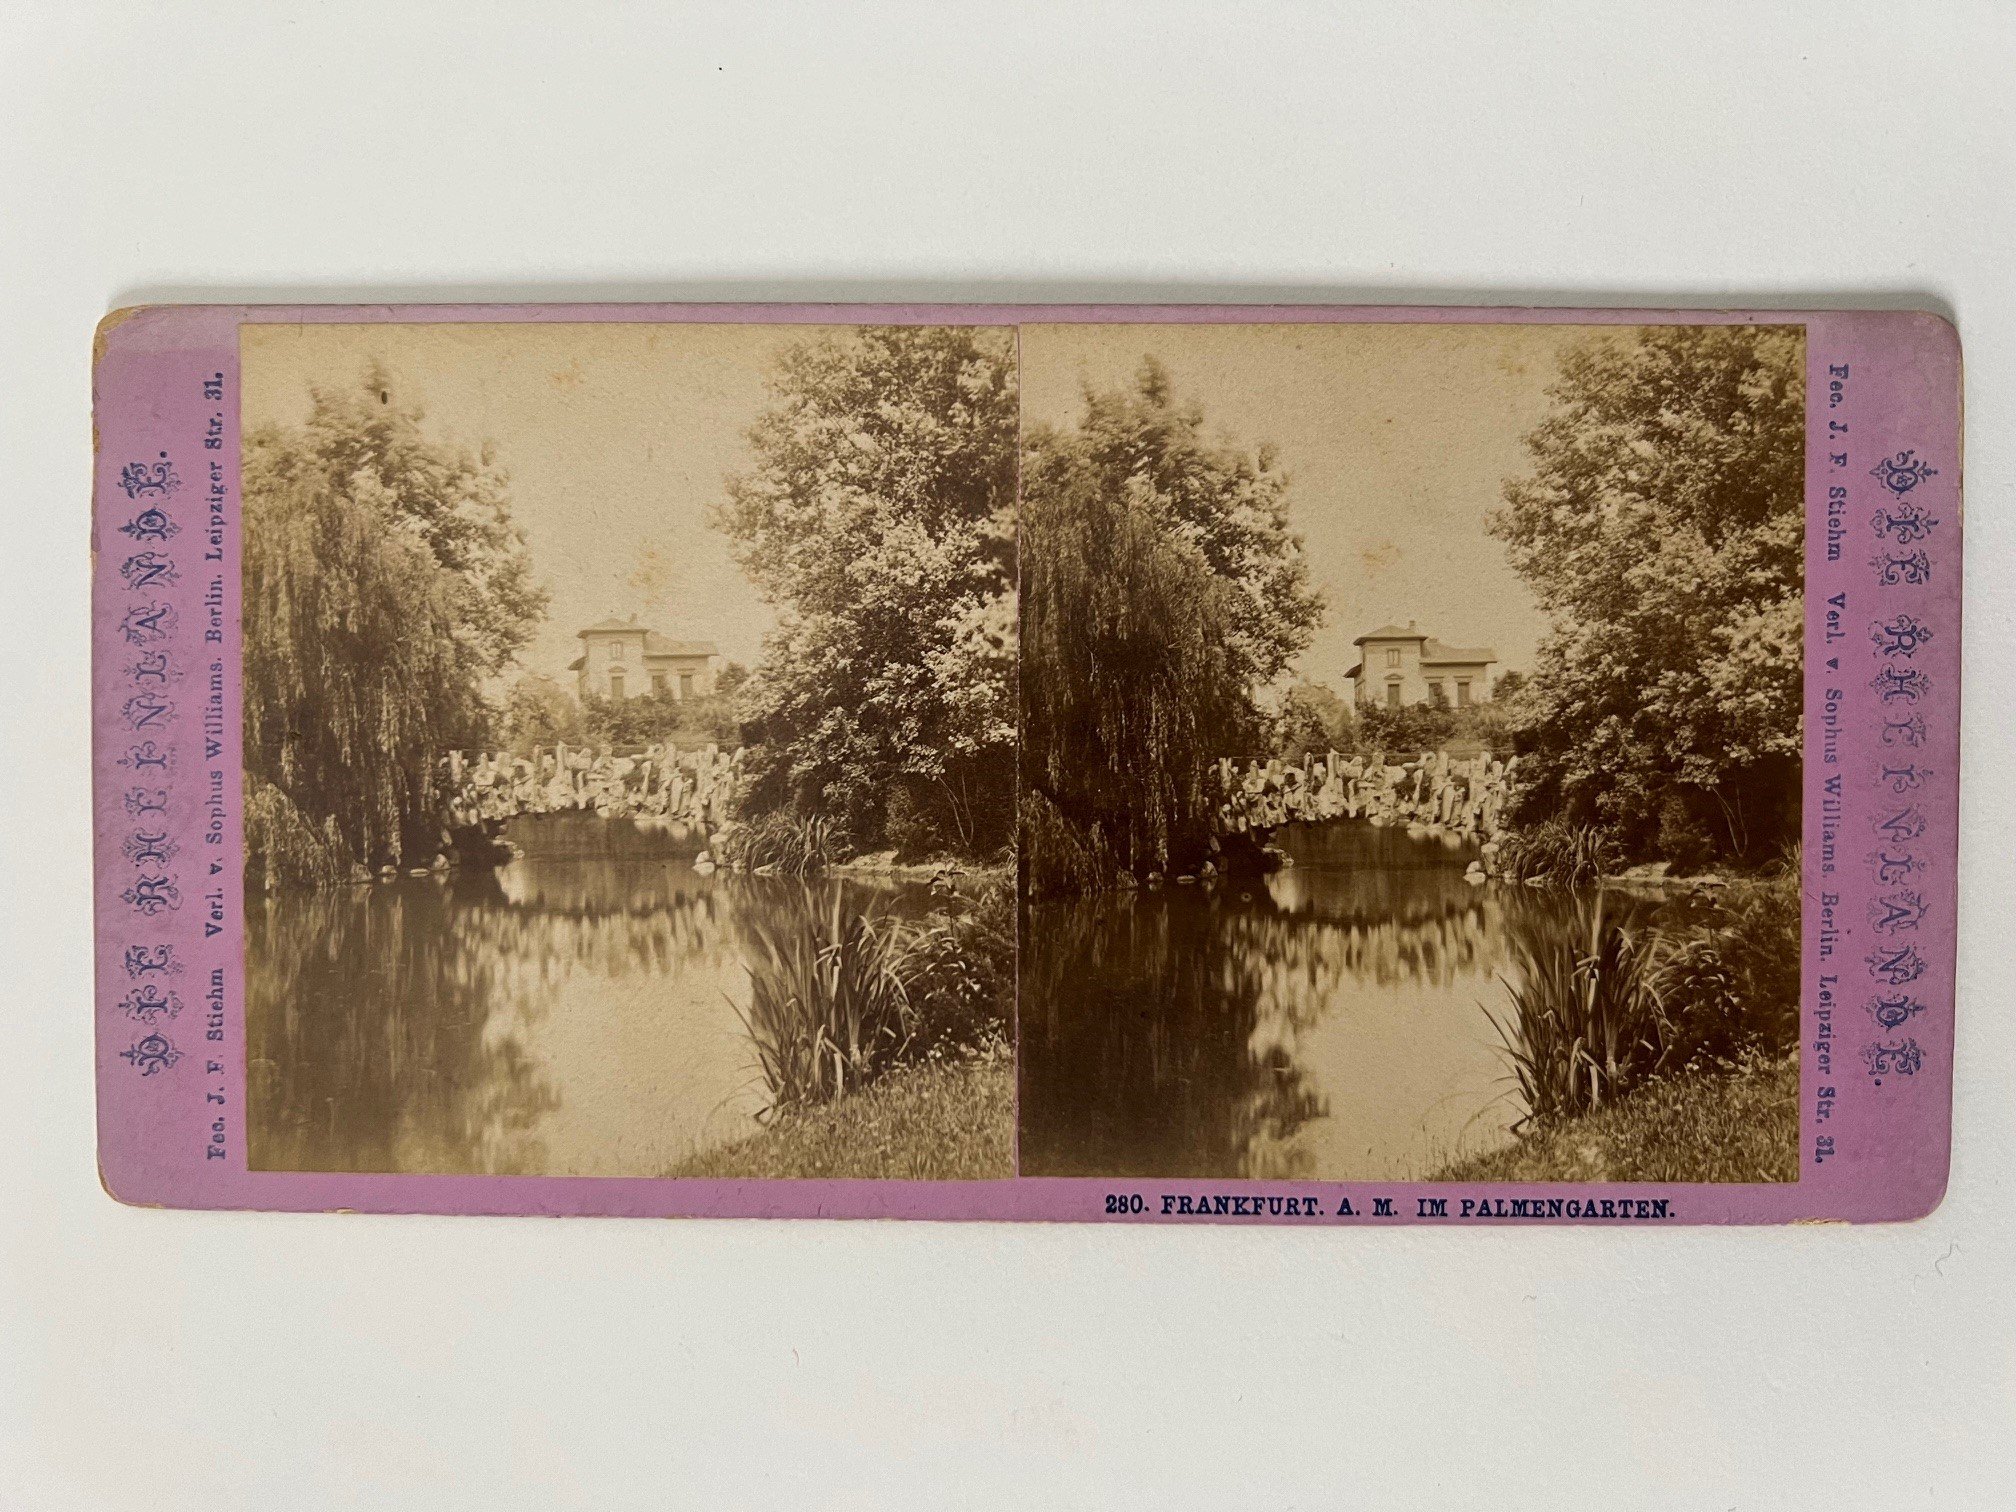 Stereobild, Johann Friedrich Stiehm, Frankfurt, Nr. 280, Palmengarten, ca. 1880. (Taunus-Rhein-Main - Regionalgeschichtliche Sammlung Dr. Stefan Naas CC BY-NC-SA)